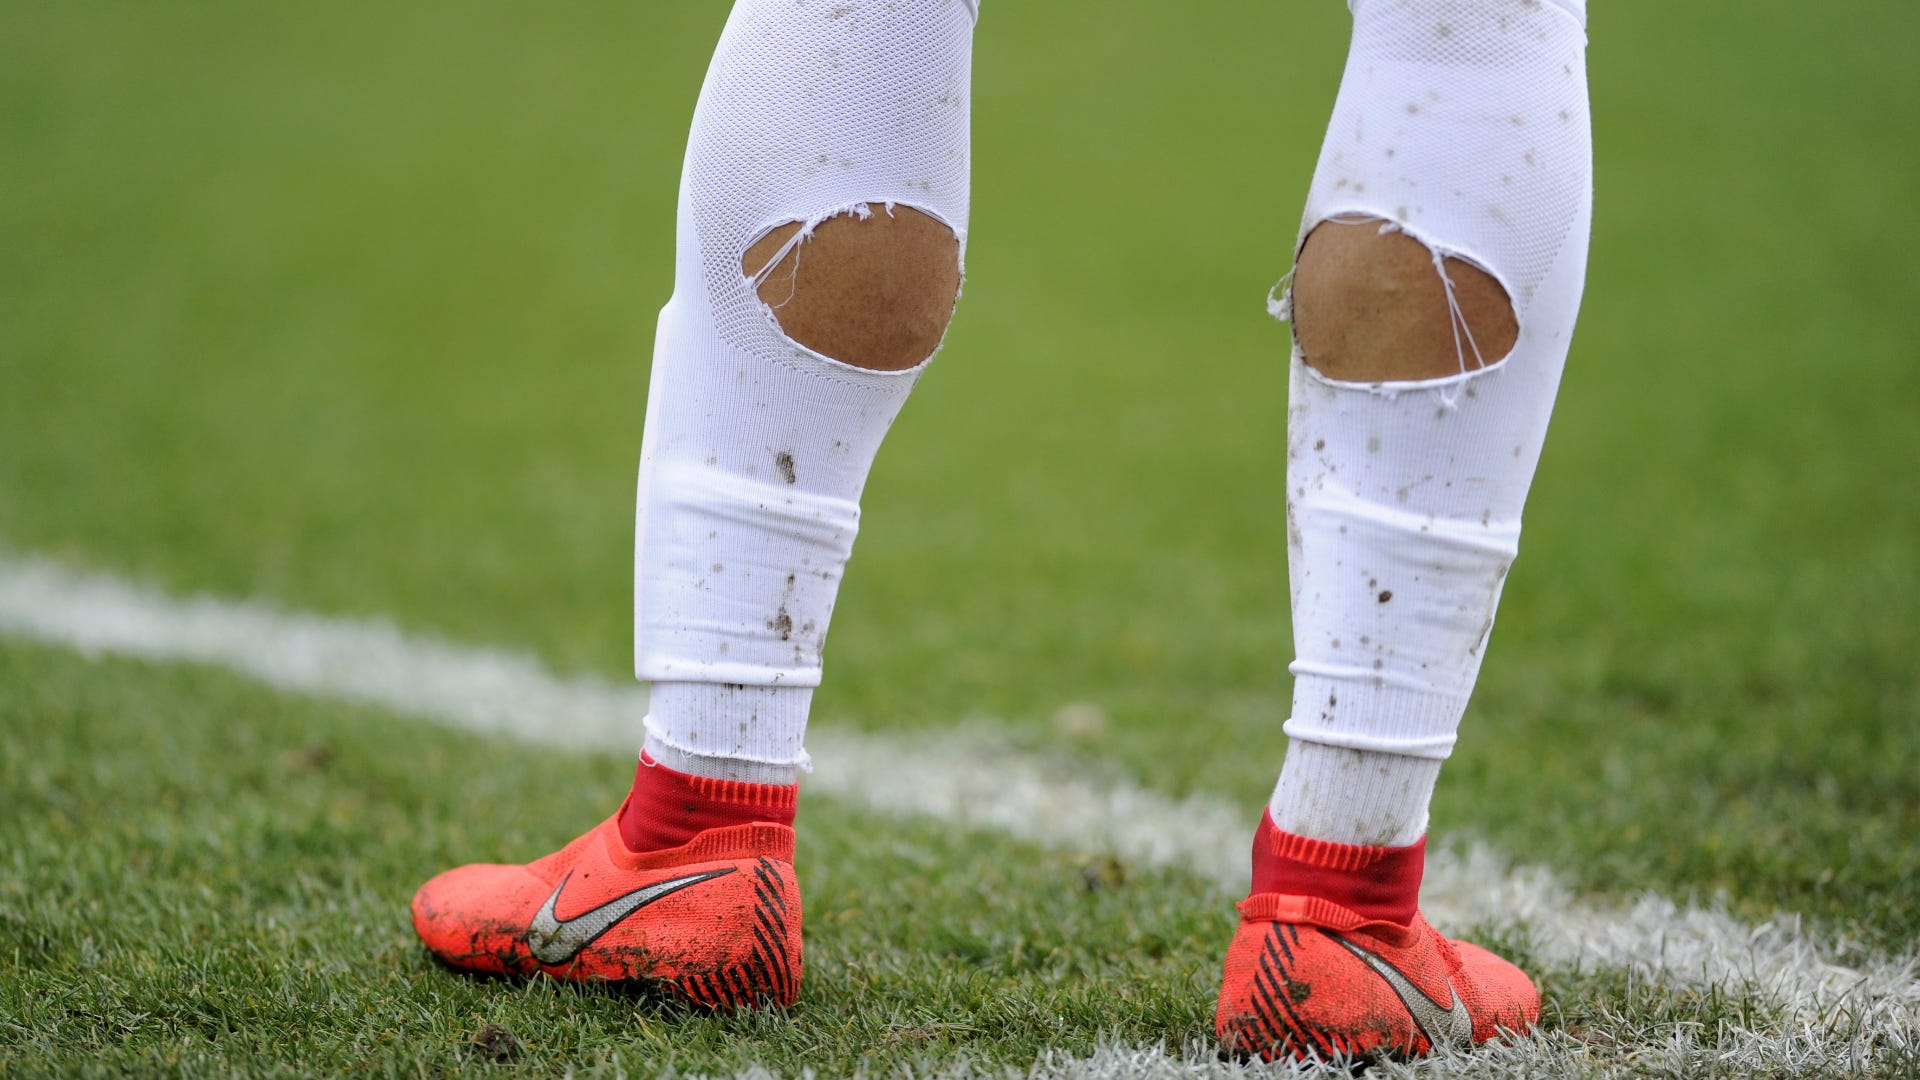 袜子的秘密:为什么足球运动员要在袜子上剪洞?